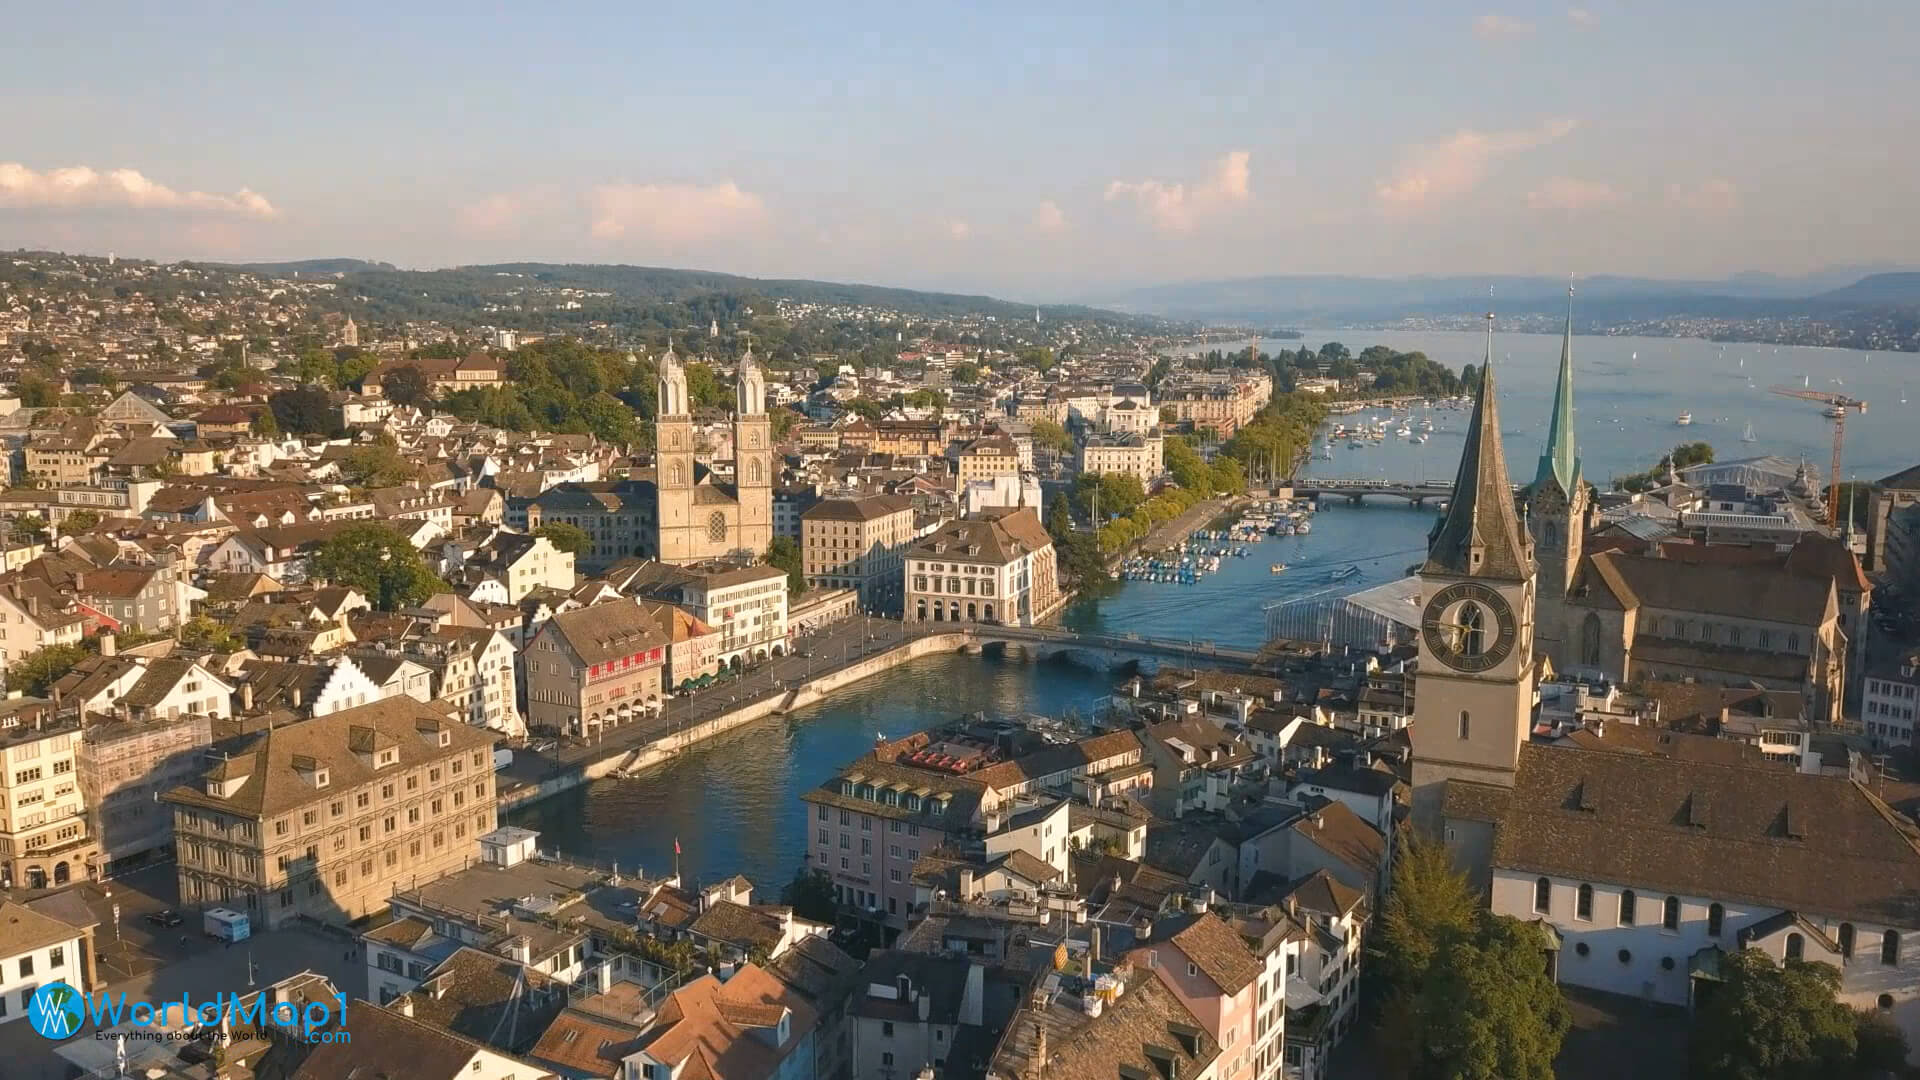 Historical City of Zurich